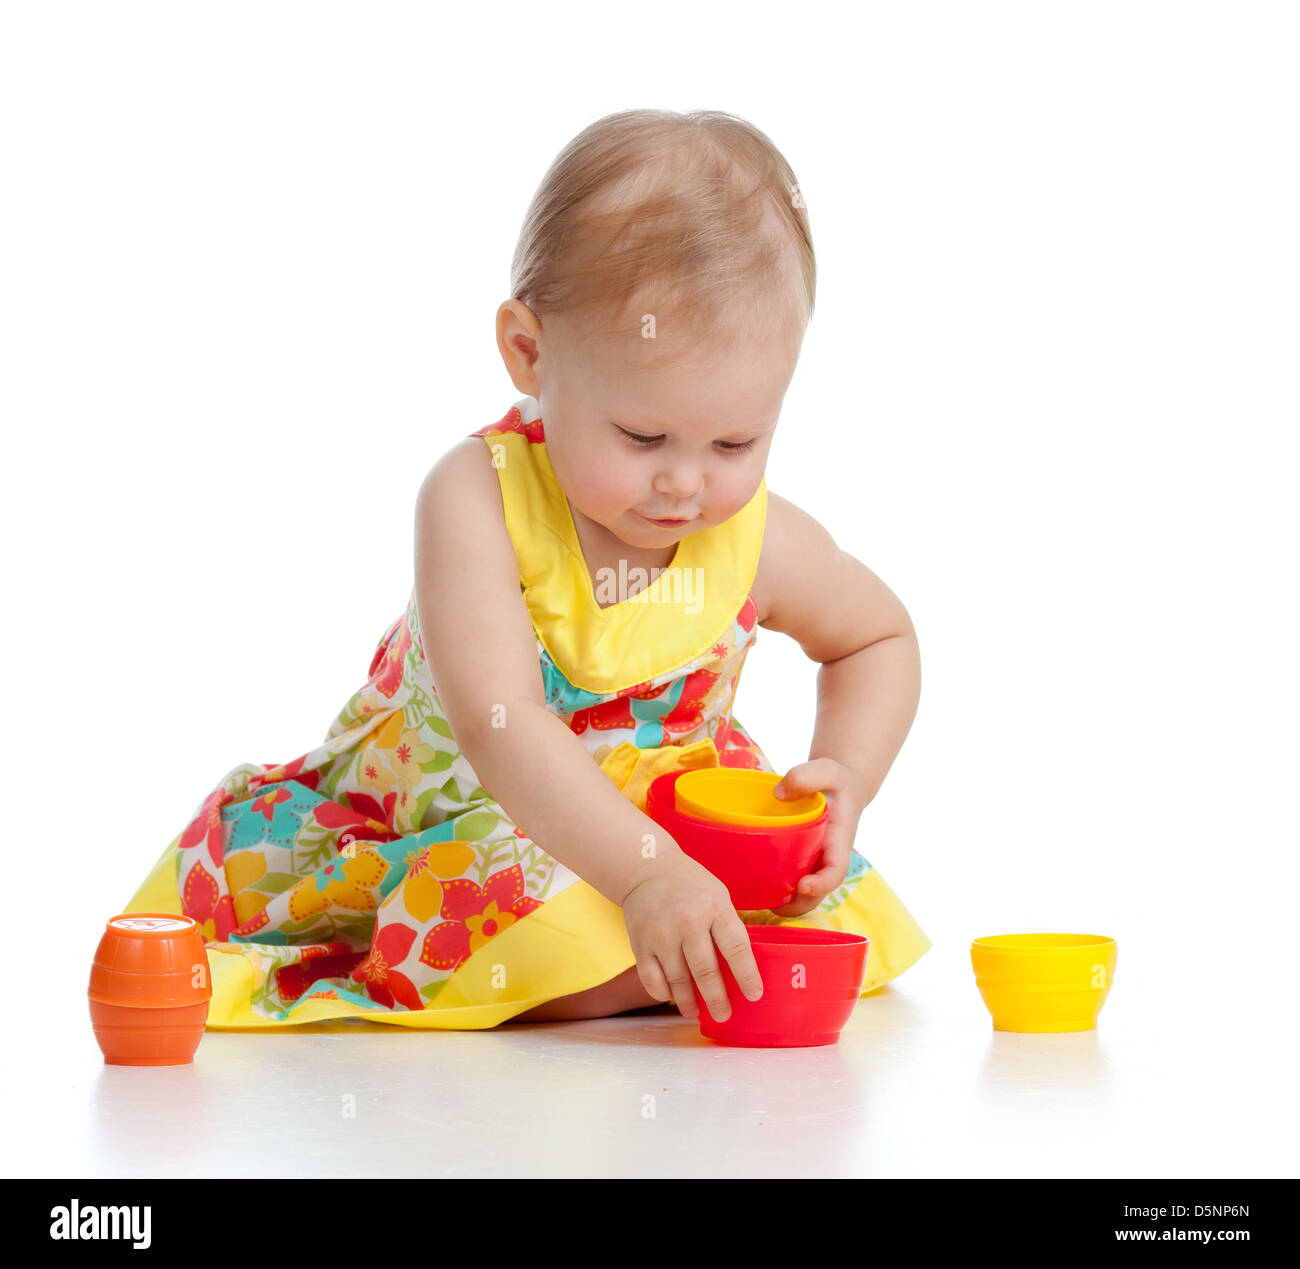 Nettes kleines Kind spielt mit Spielzeug beim Sitzen am Boden, isoliert auf weiß Stockfoto